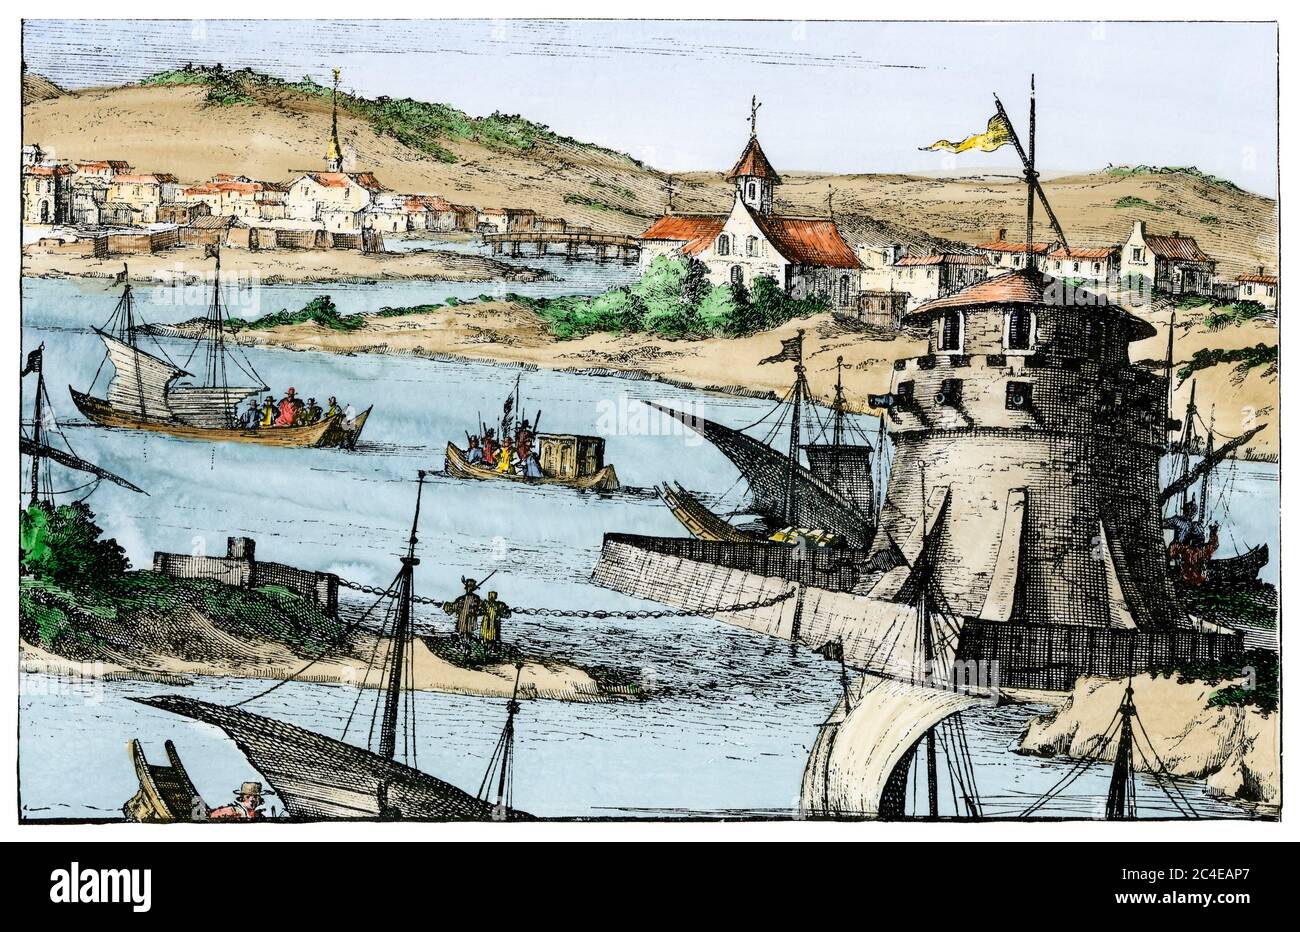 Cartagena, Kolumbien, ein wichtiger spanischer Kolonialhafen, Anfang des 16. Jahrhunderts. Handkolorierter Holzschnitt aus Montanus Stockfoto